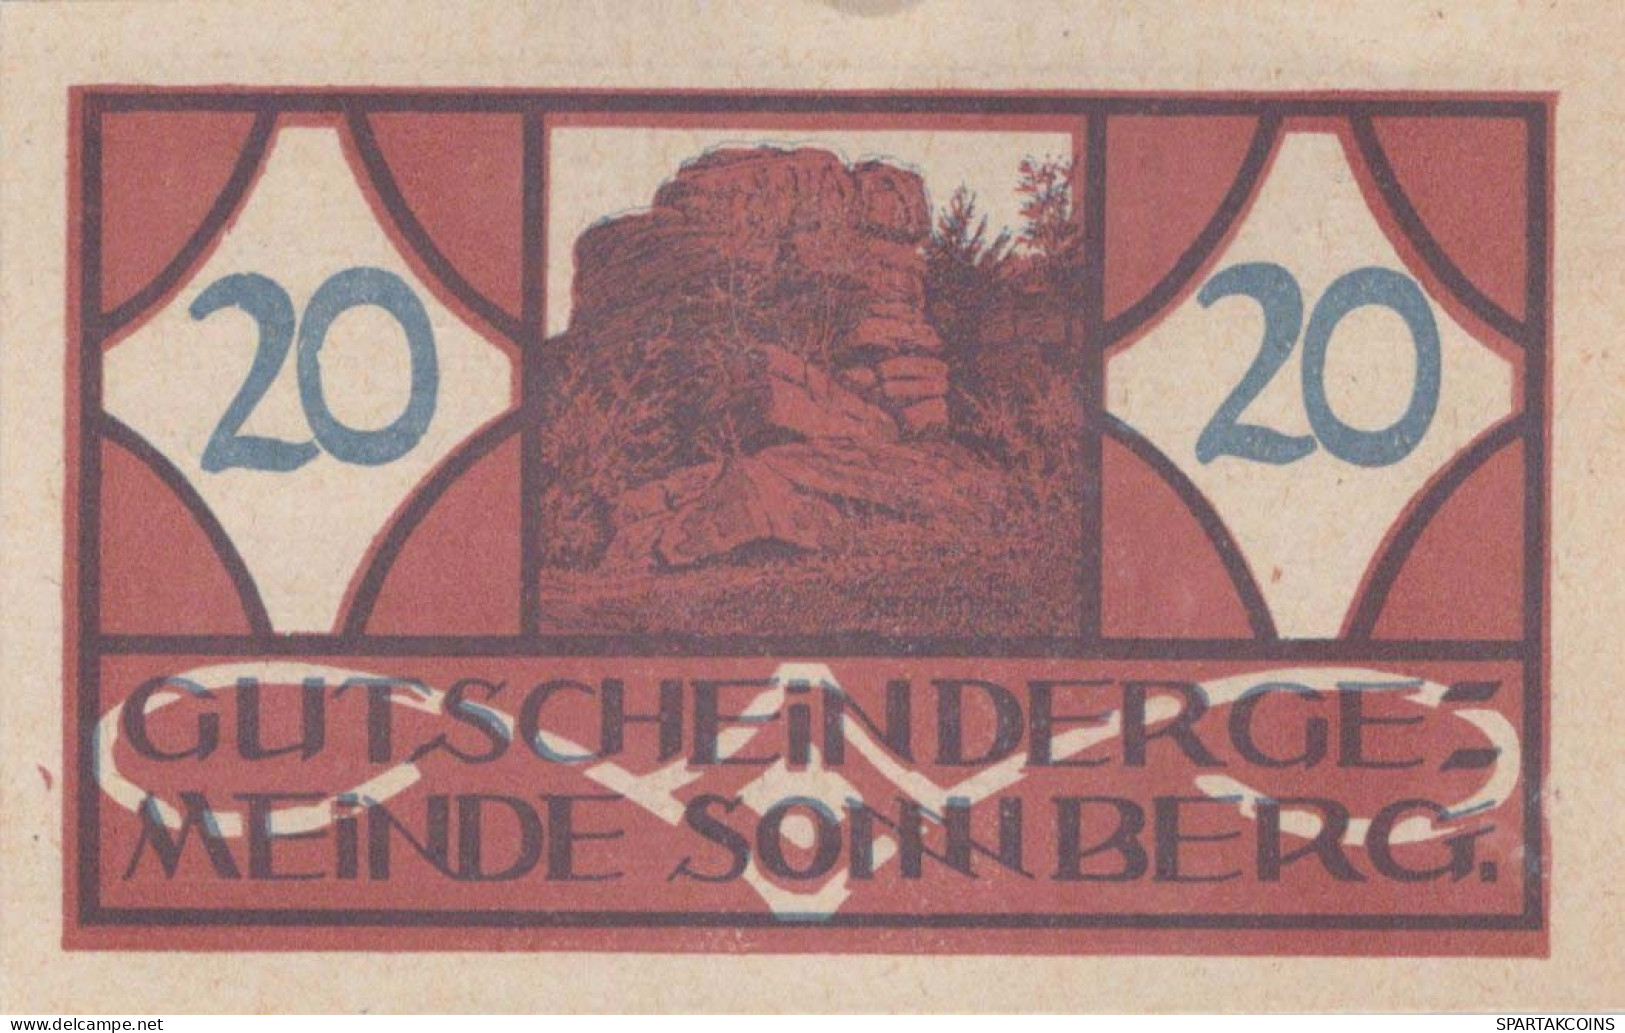 20 HELLER 1920 Stadt SONNBERG Oberösterreich Österreich Notgeld Papiergeld Banknote #PG674 - Lokale Ausgaben